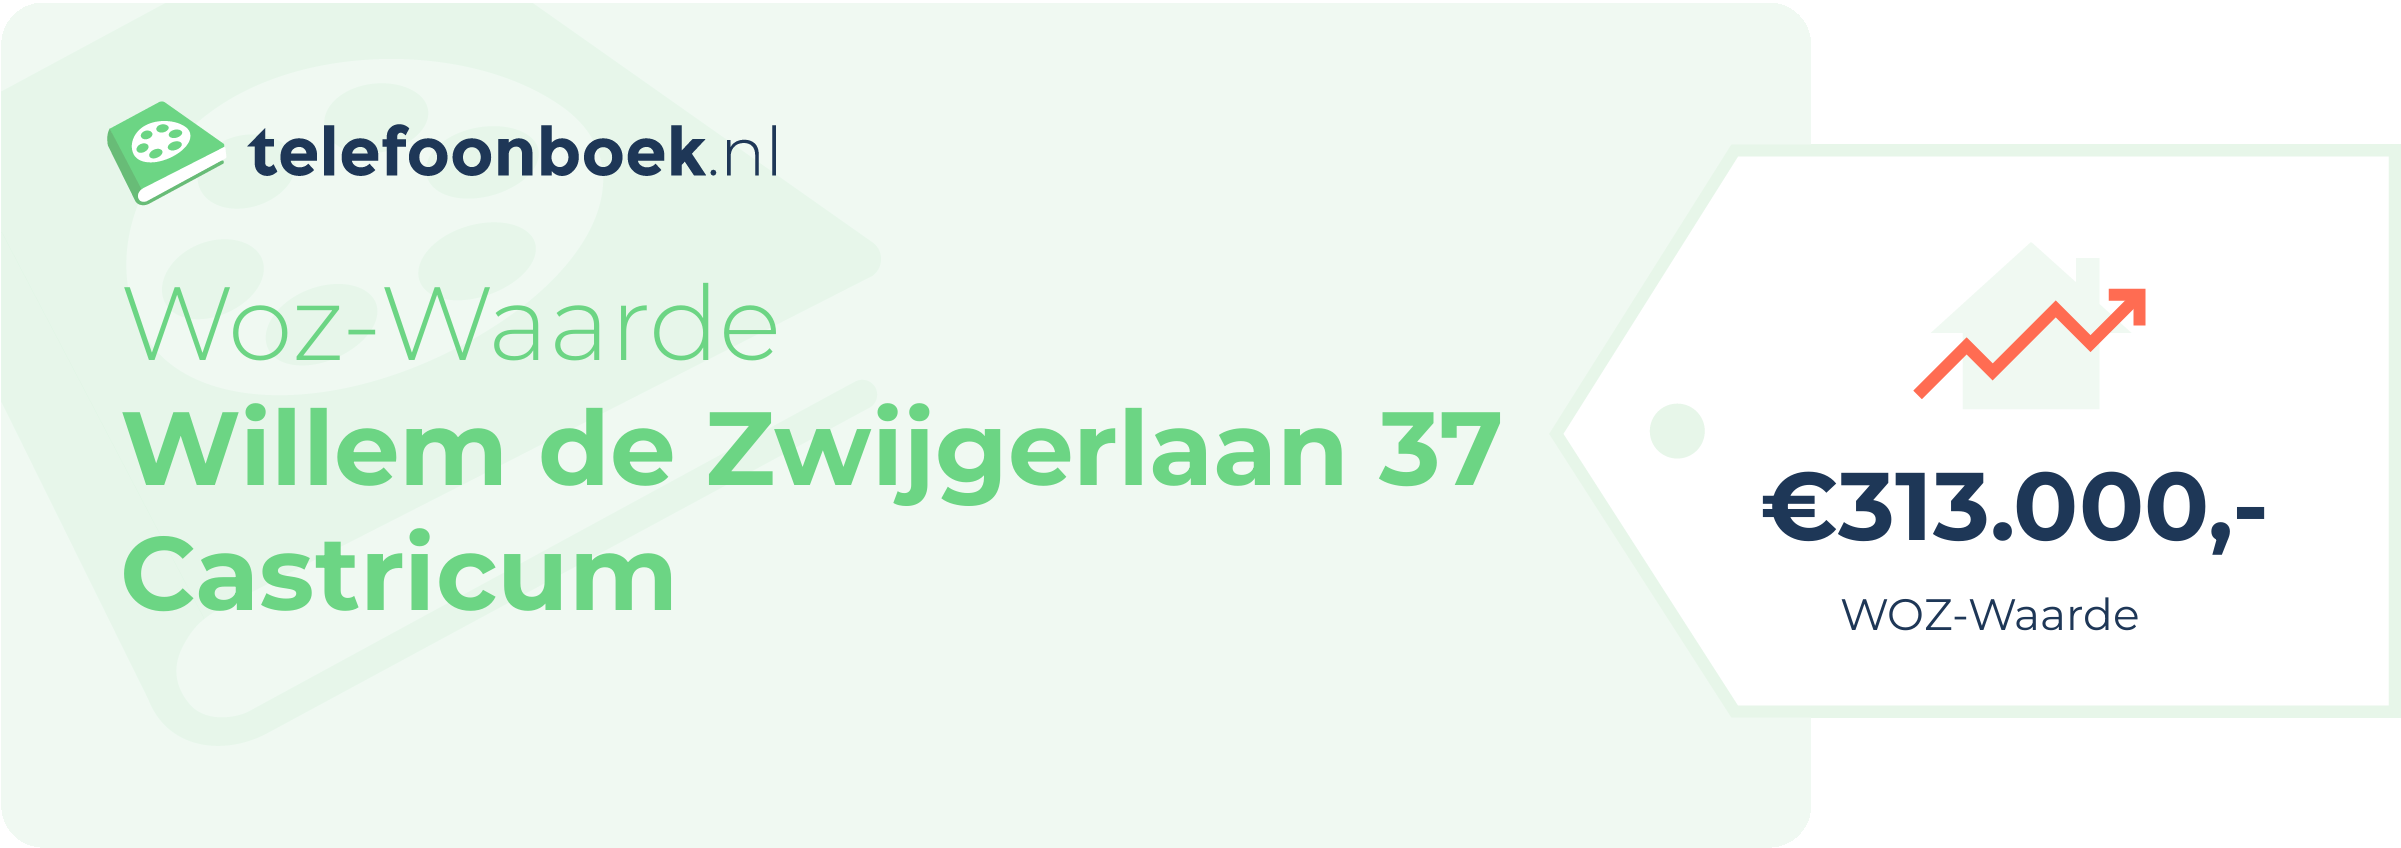 WOZ-waarde Willem De Zwijgerlaan 37 Castricum